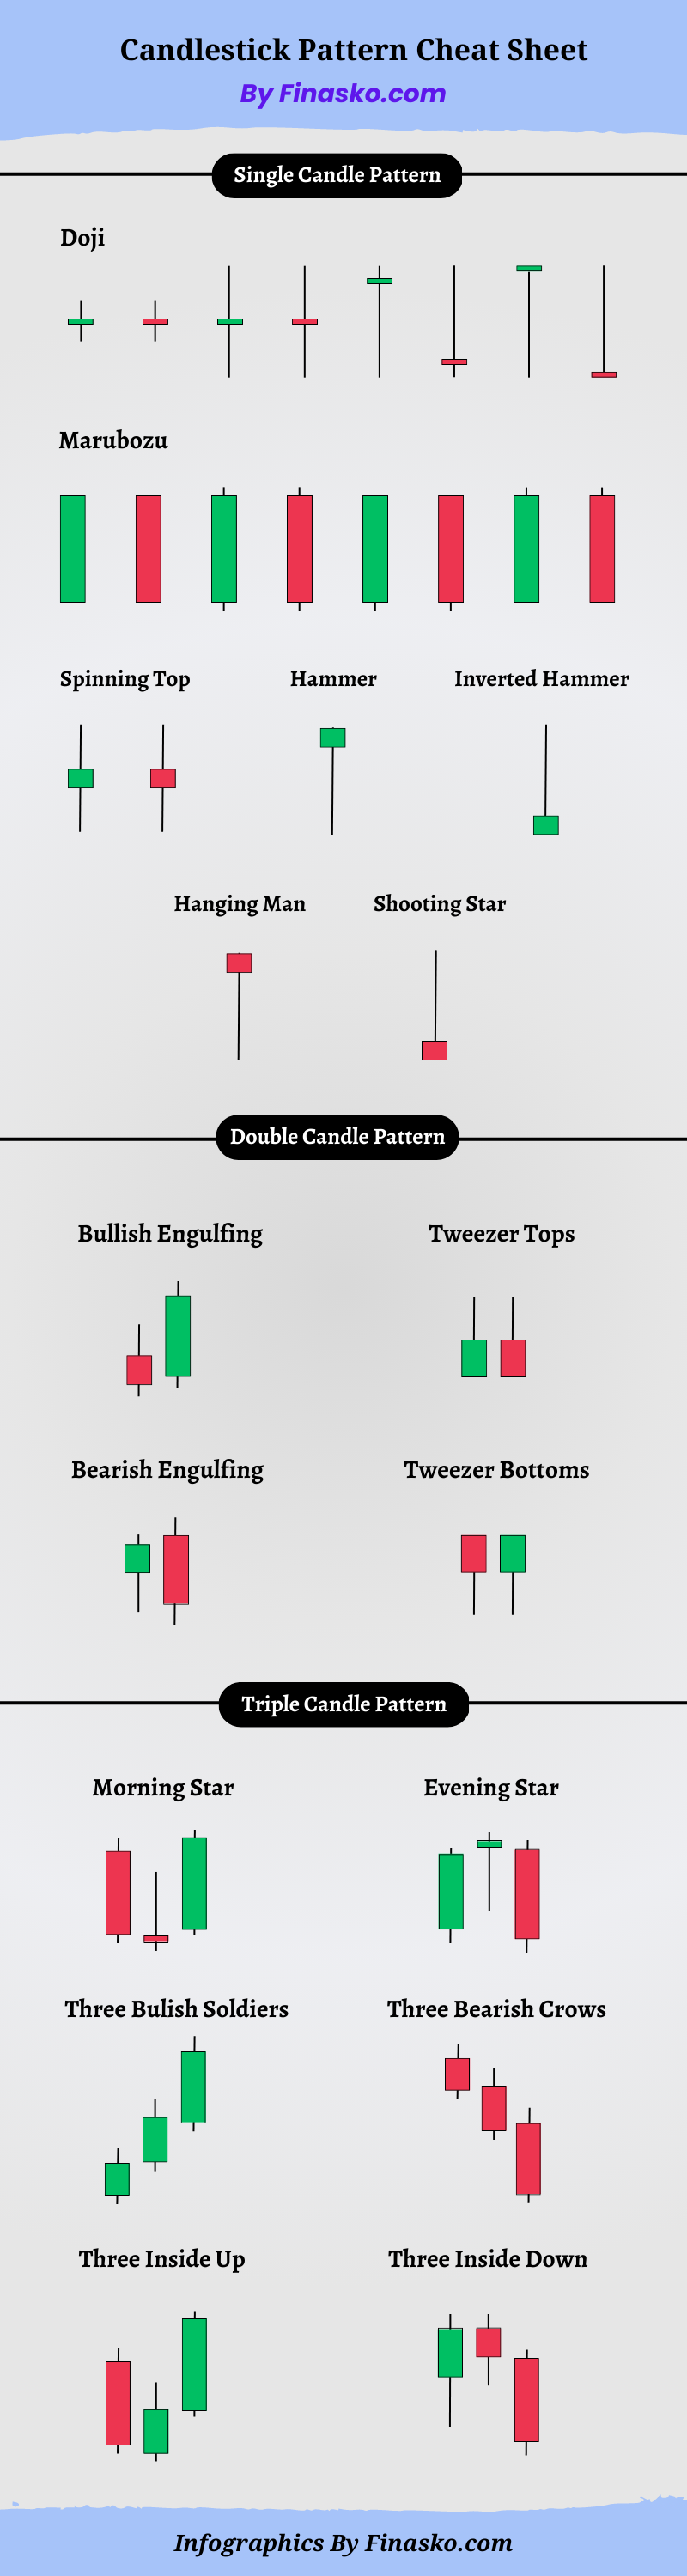 Candlestick Chart Pattern Cheat Sheet HD Image